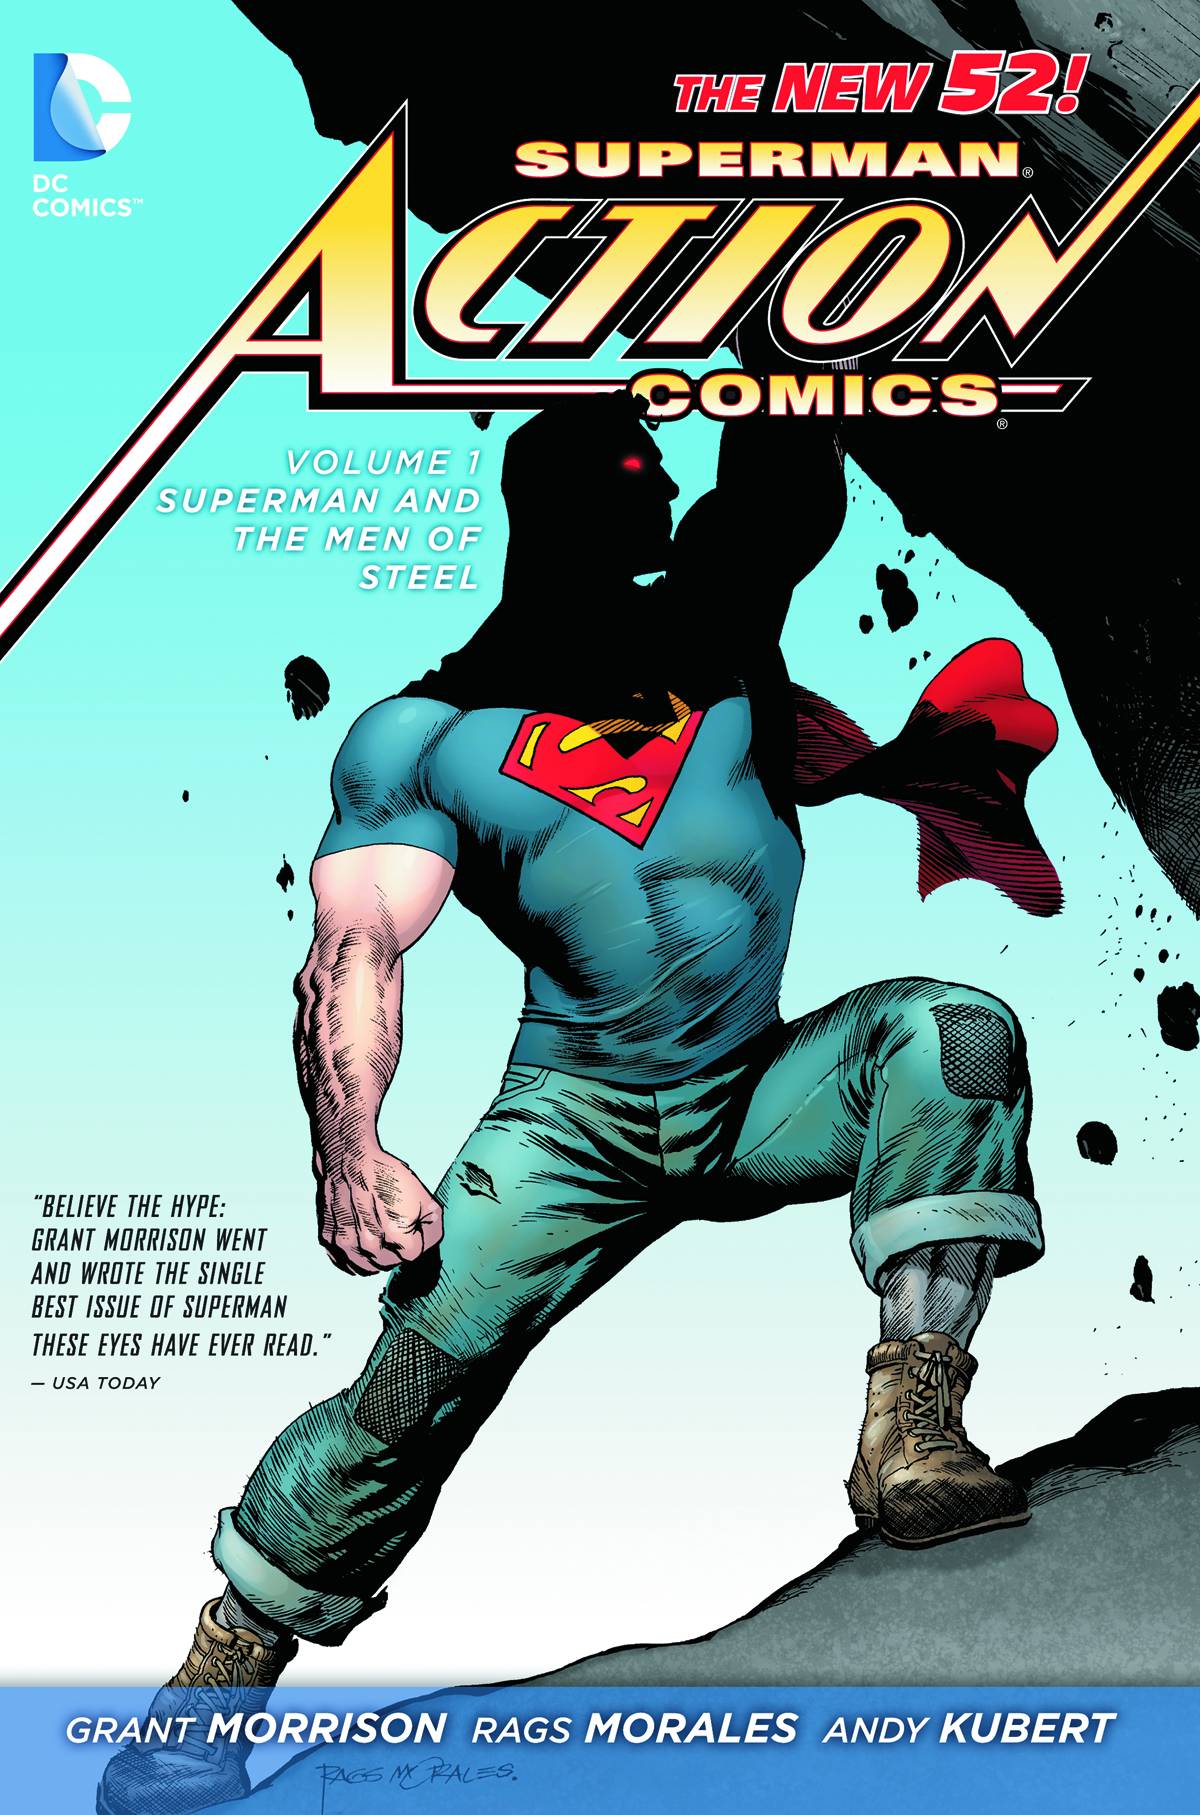 Superman Action Comics TPB Vol 1 Superman Men of Steel